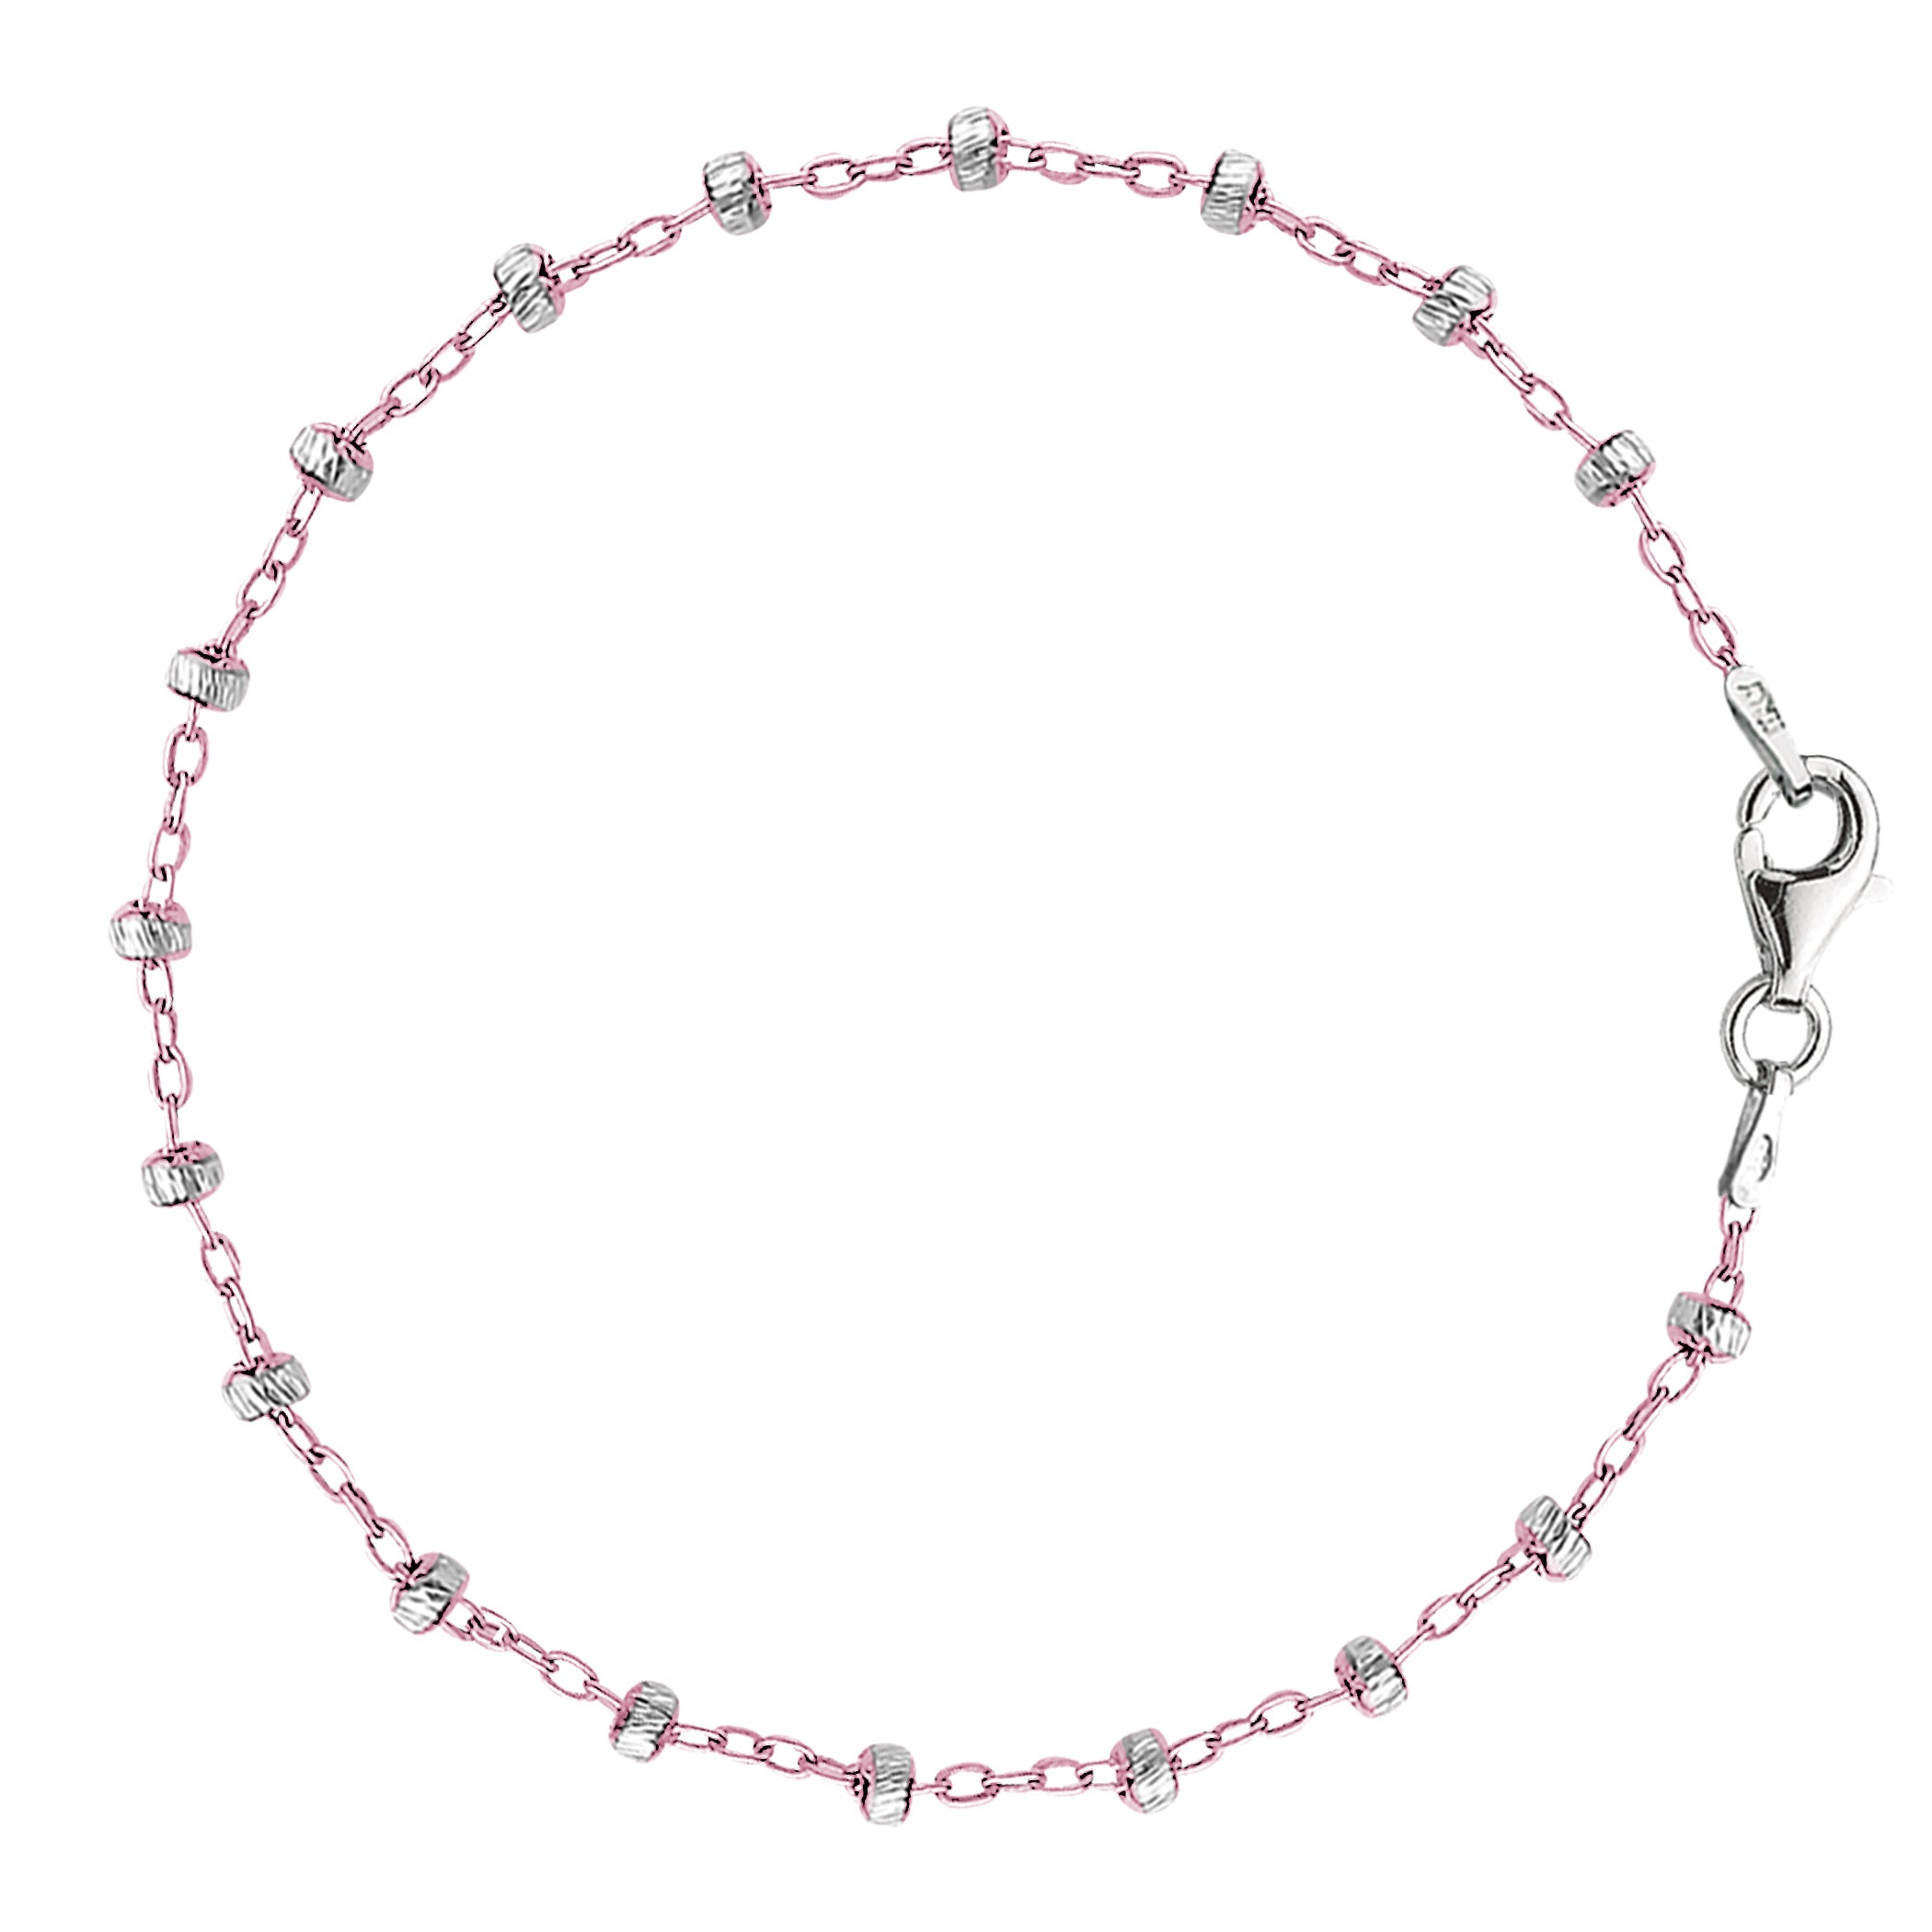 Tobillera con cadena estilo cable Saturno rosa y blanco en plata de ley, joyería fina de diseño para hombres y mujeres